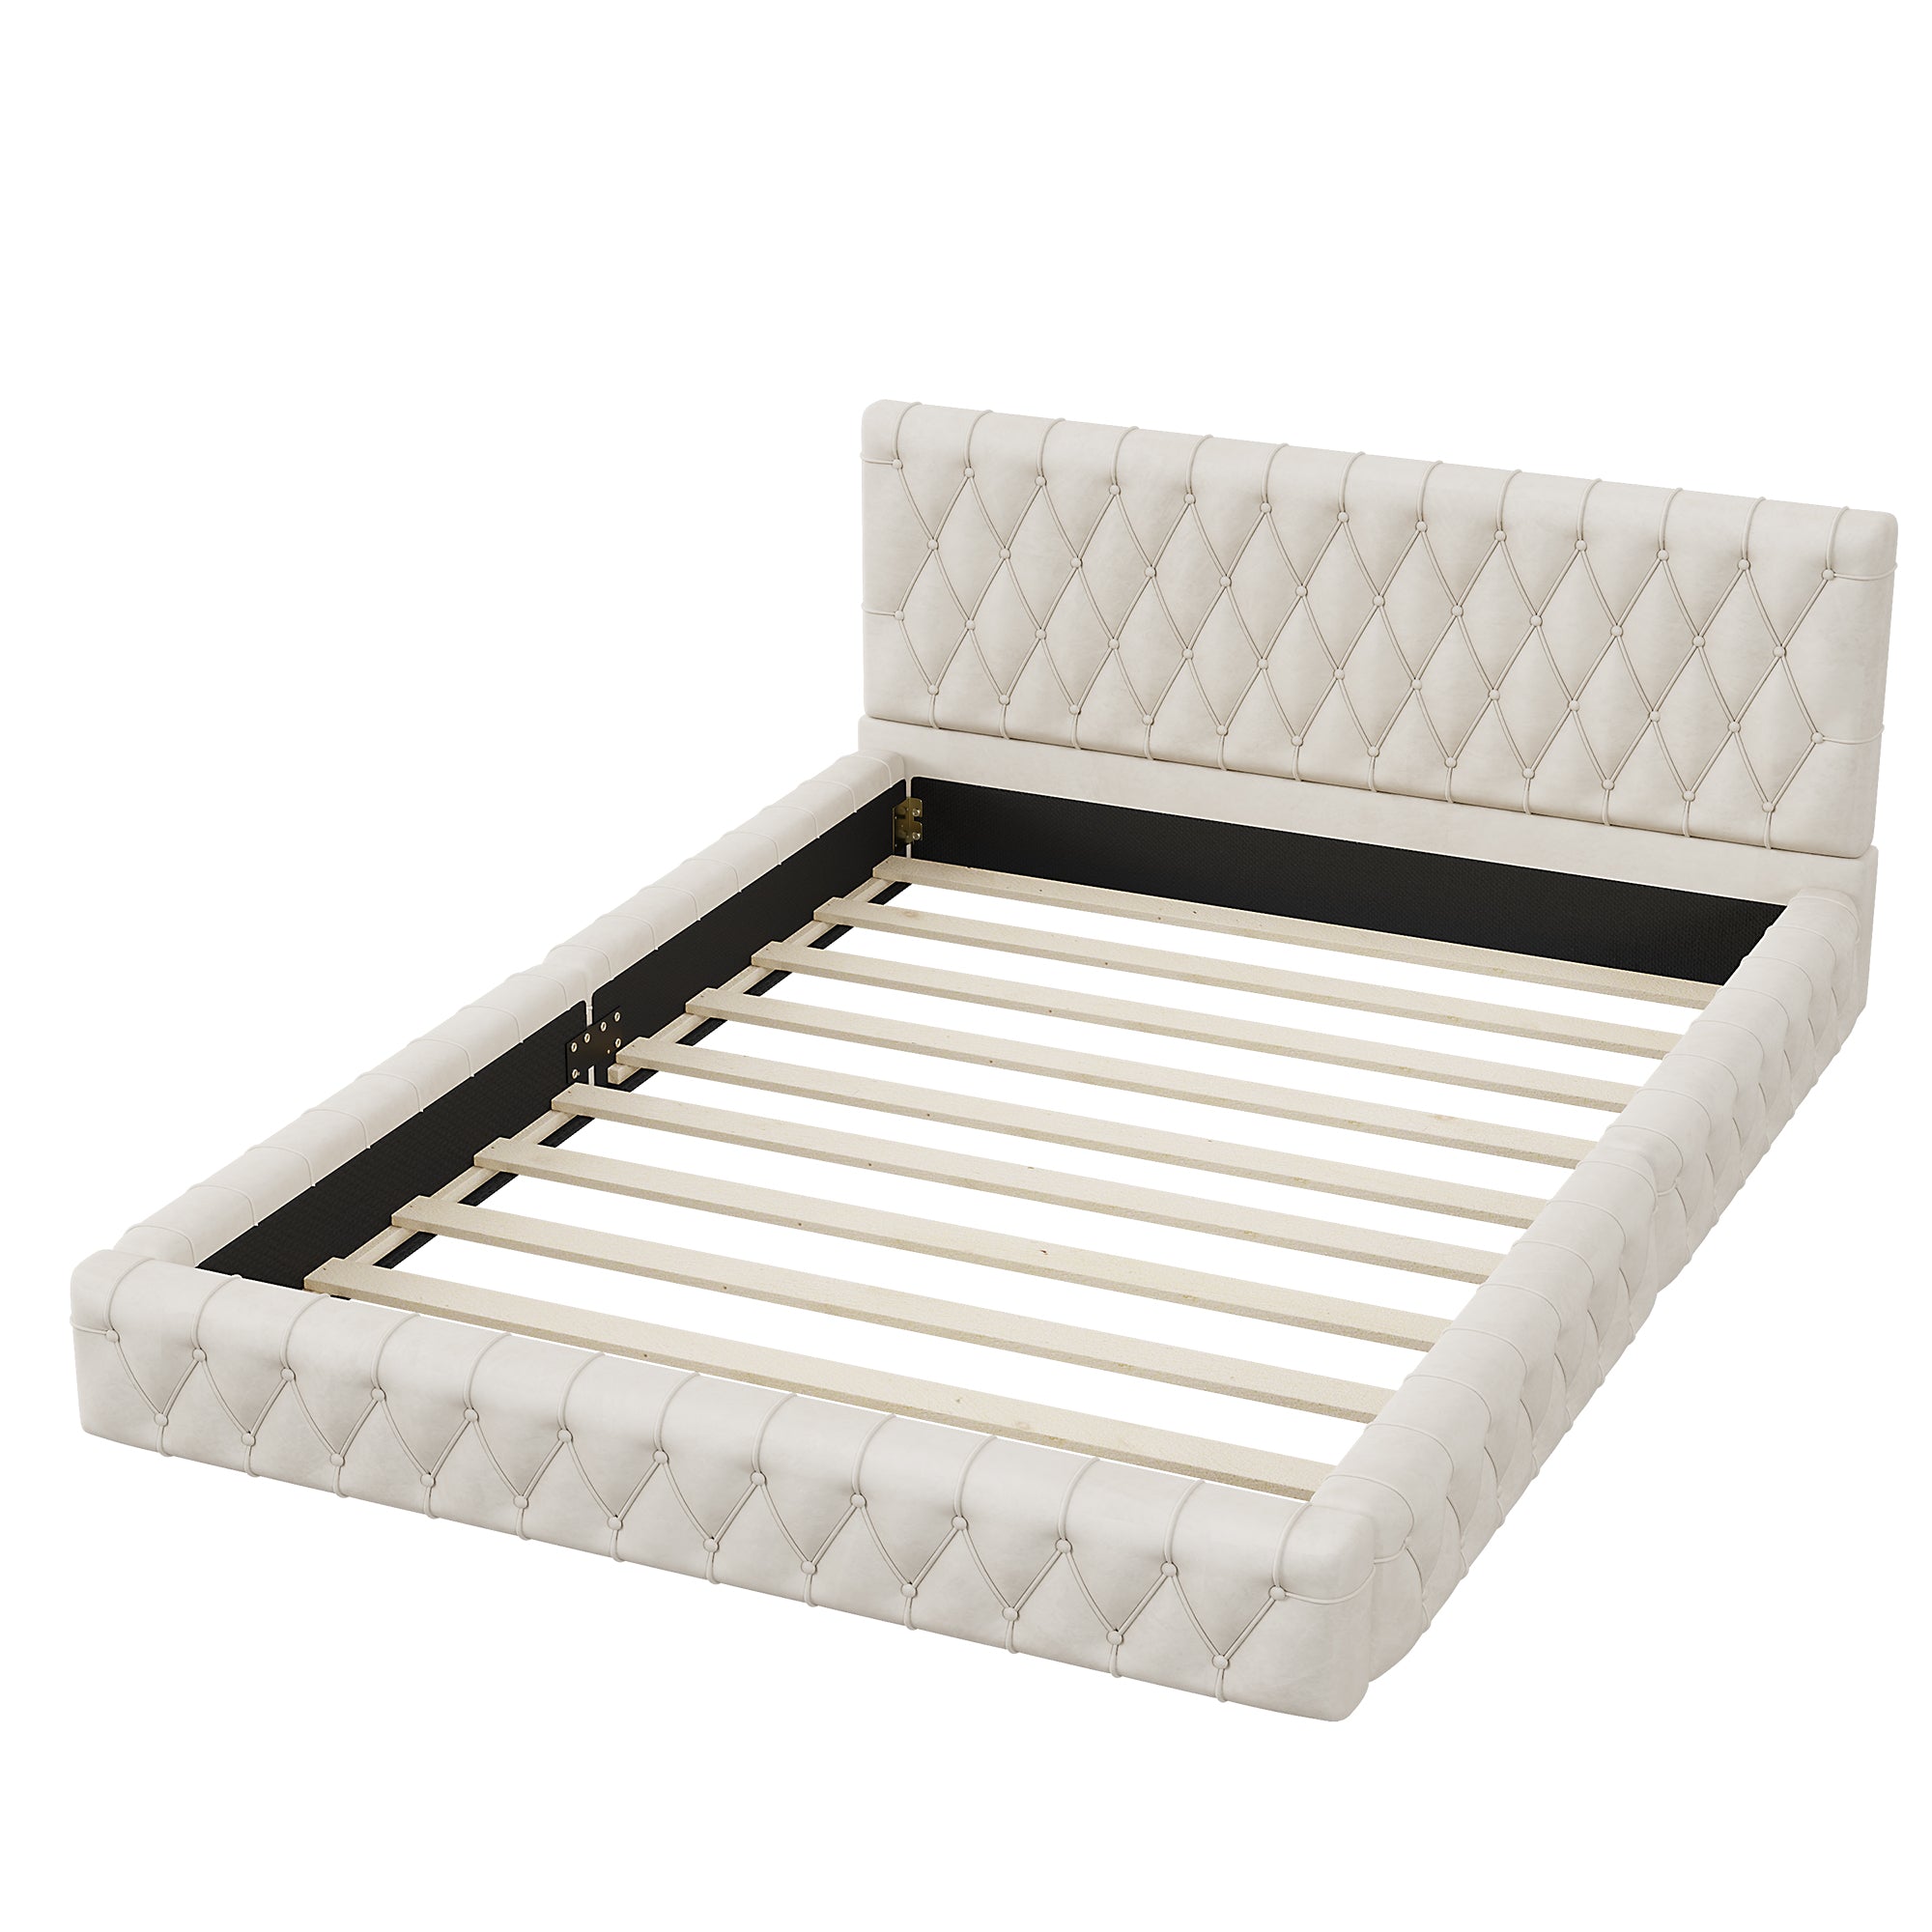 Bellemave® Queen Size Velvet Upholstered Platform Bed with Tufted Headboard Bellemave®